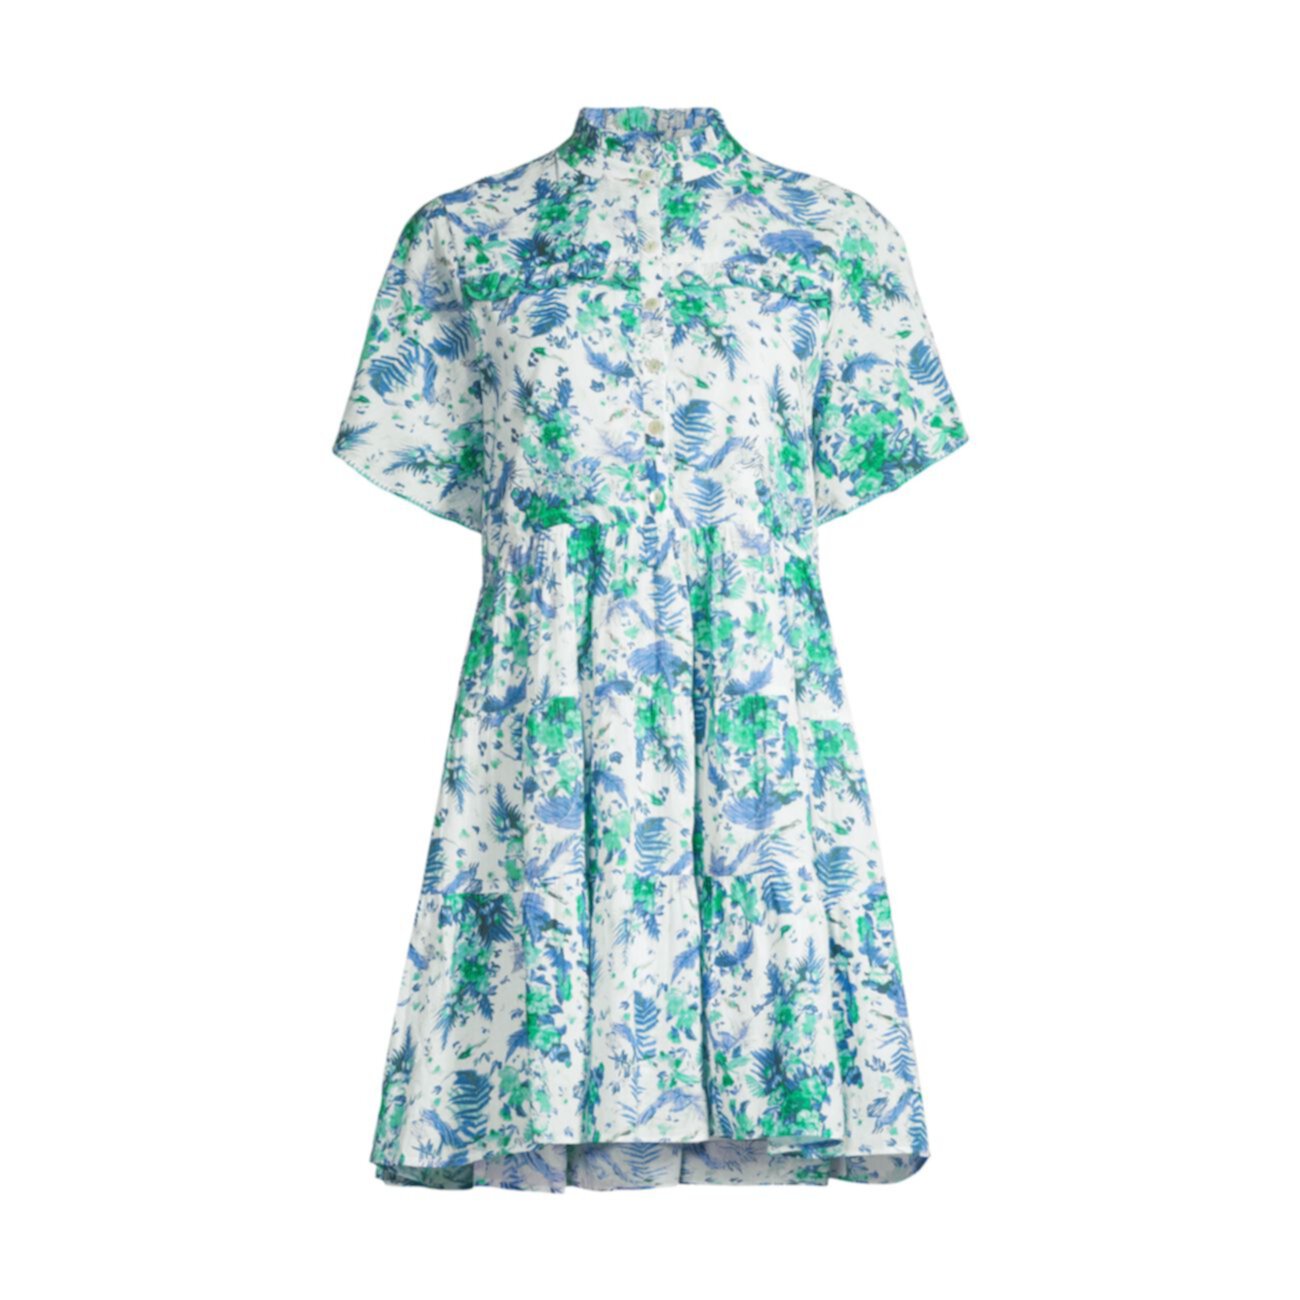 Многоярусное платье с цветочным принтом Vibeka Ro's Garden